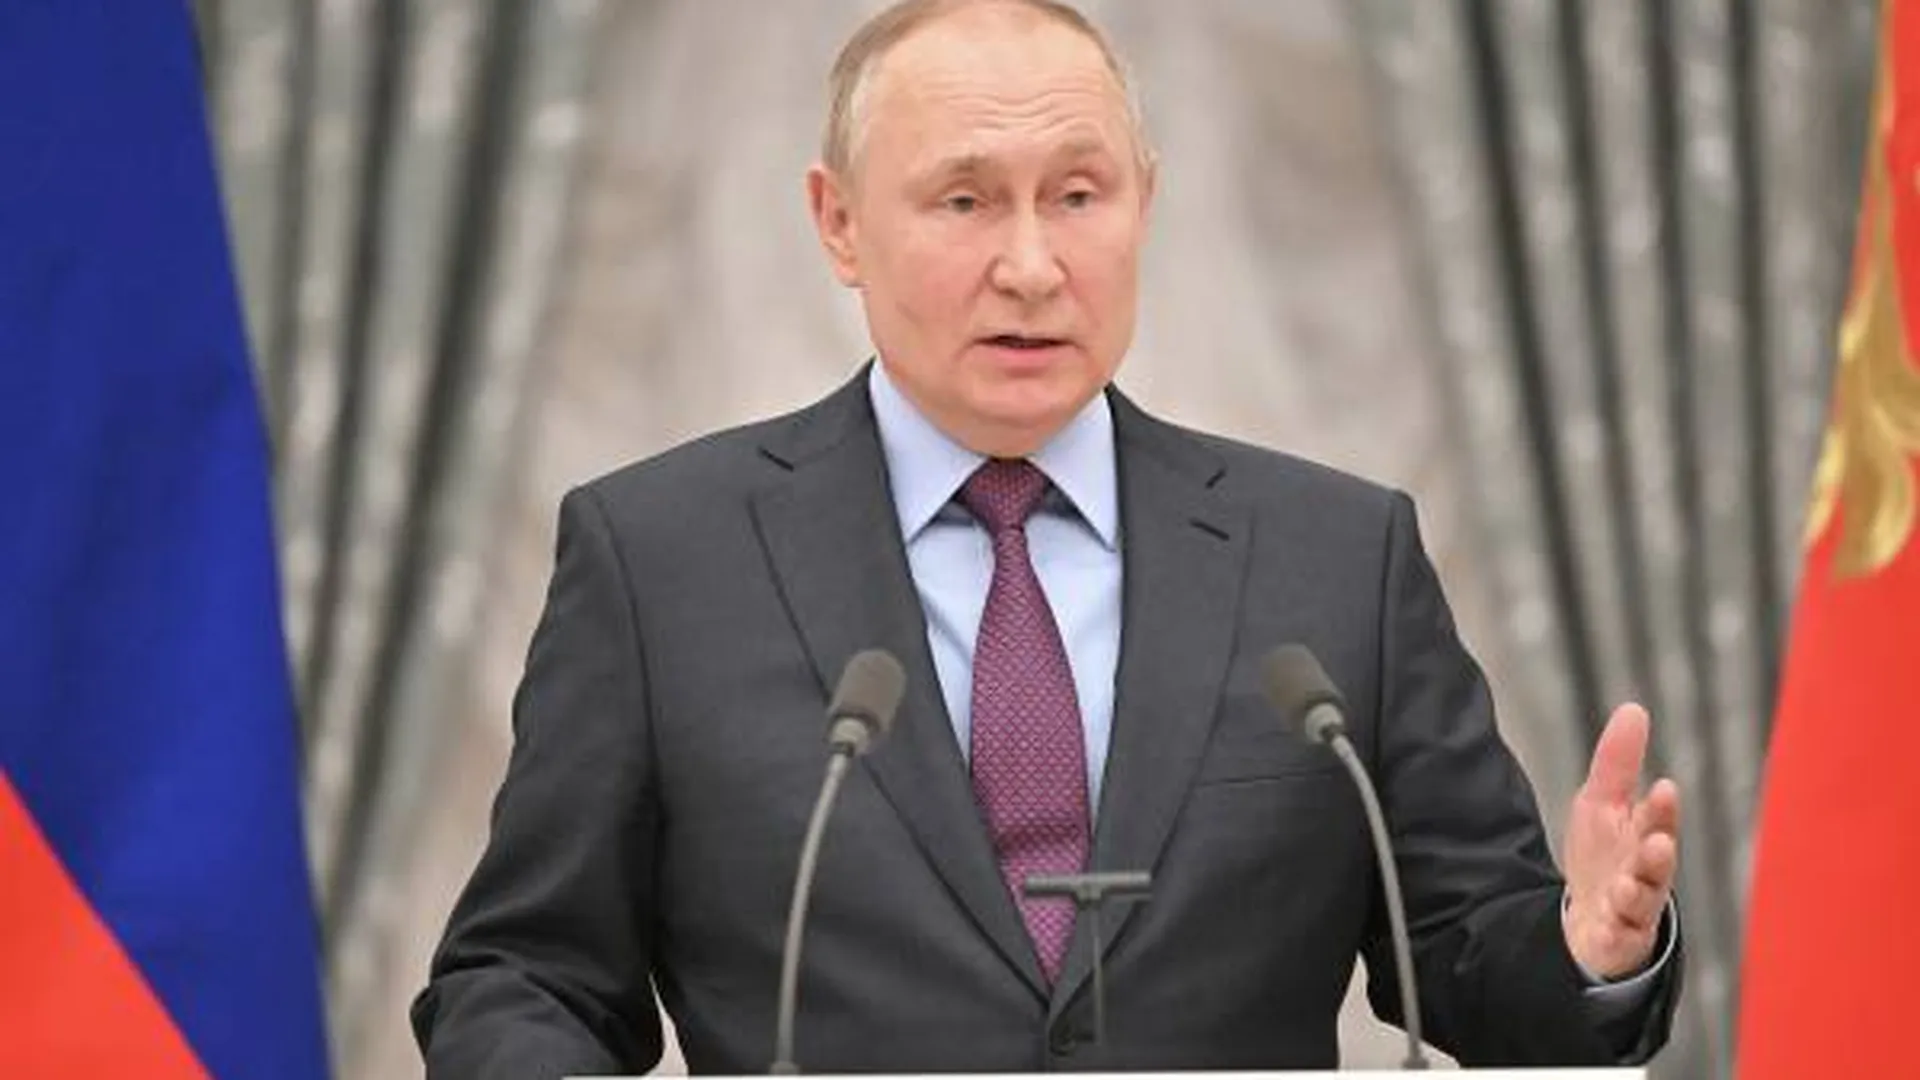 Цели спецоперации не изменились — Путин